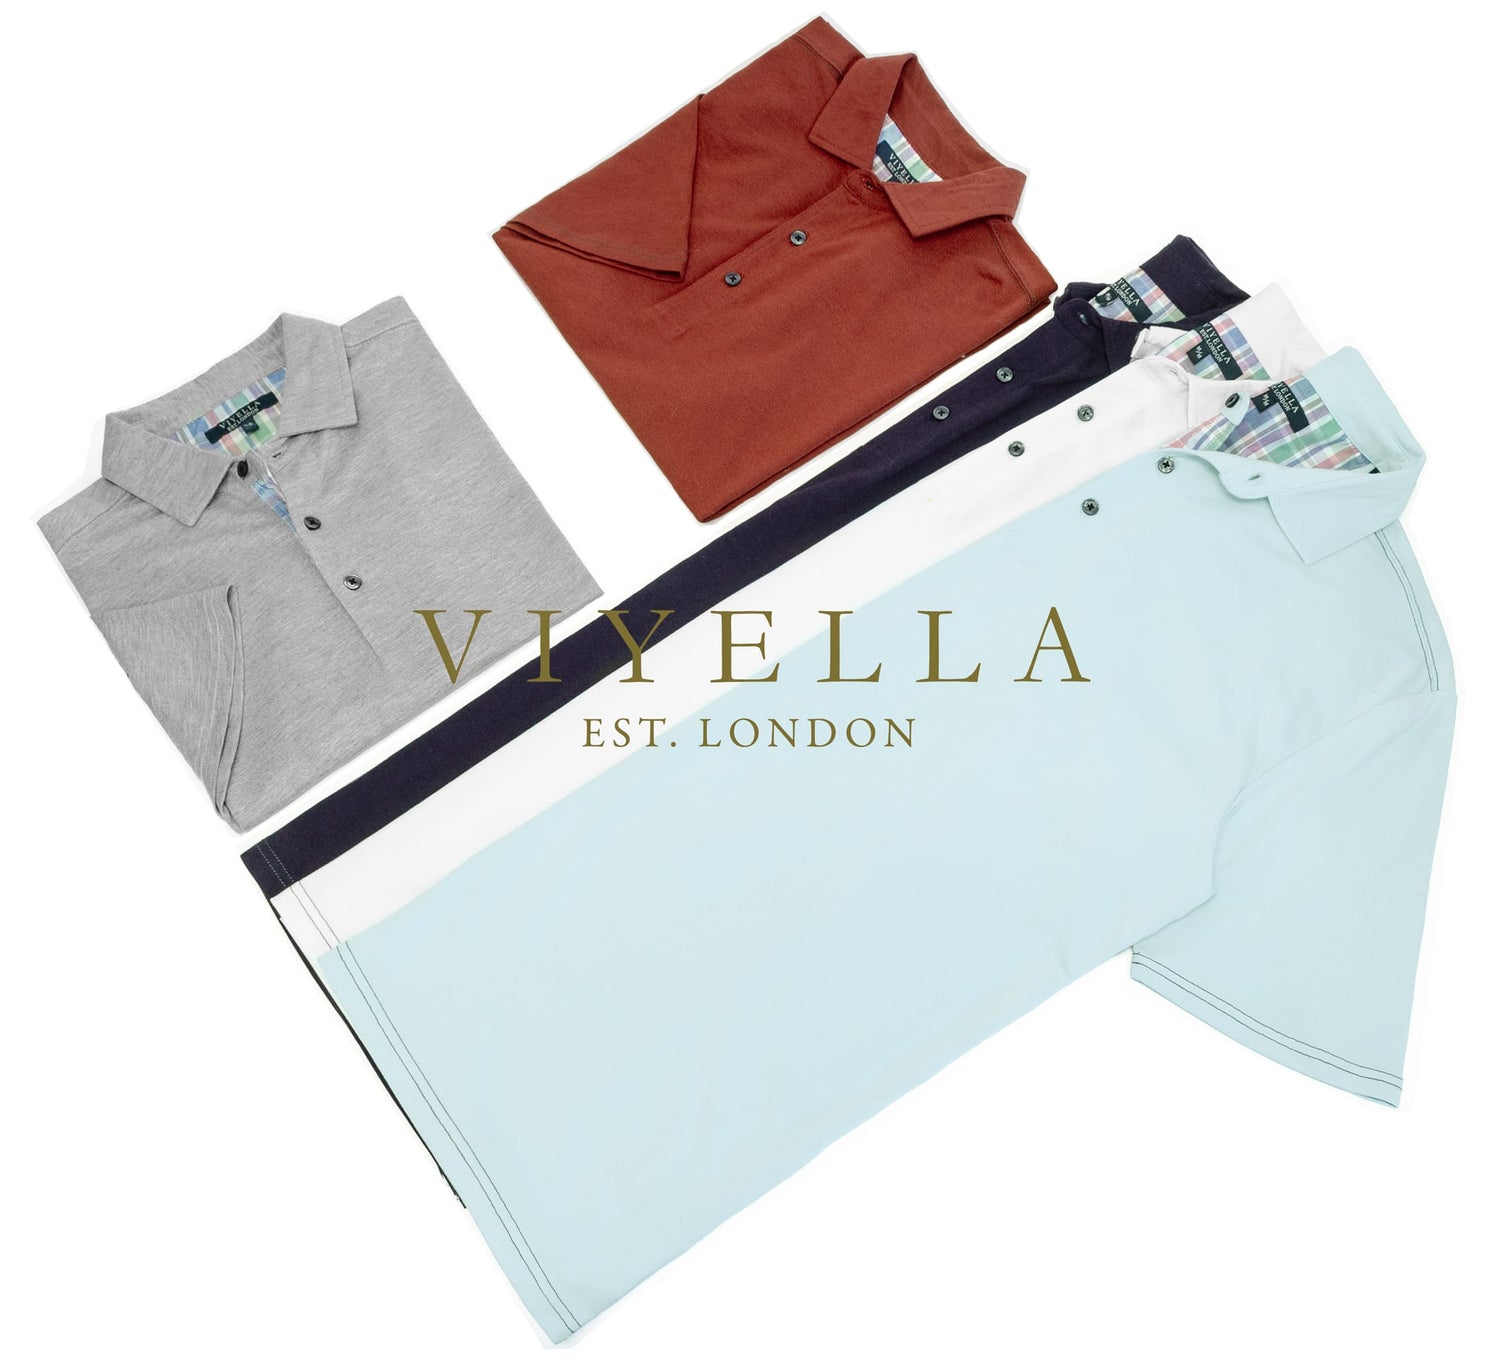 Viyella Polo Shirts and T-Shirts